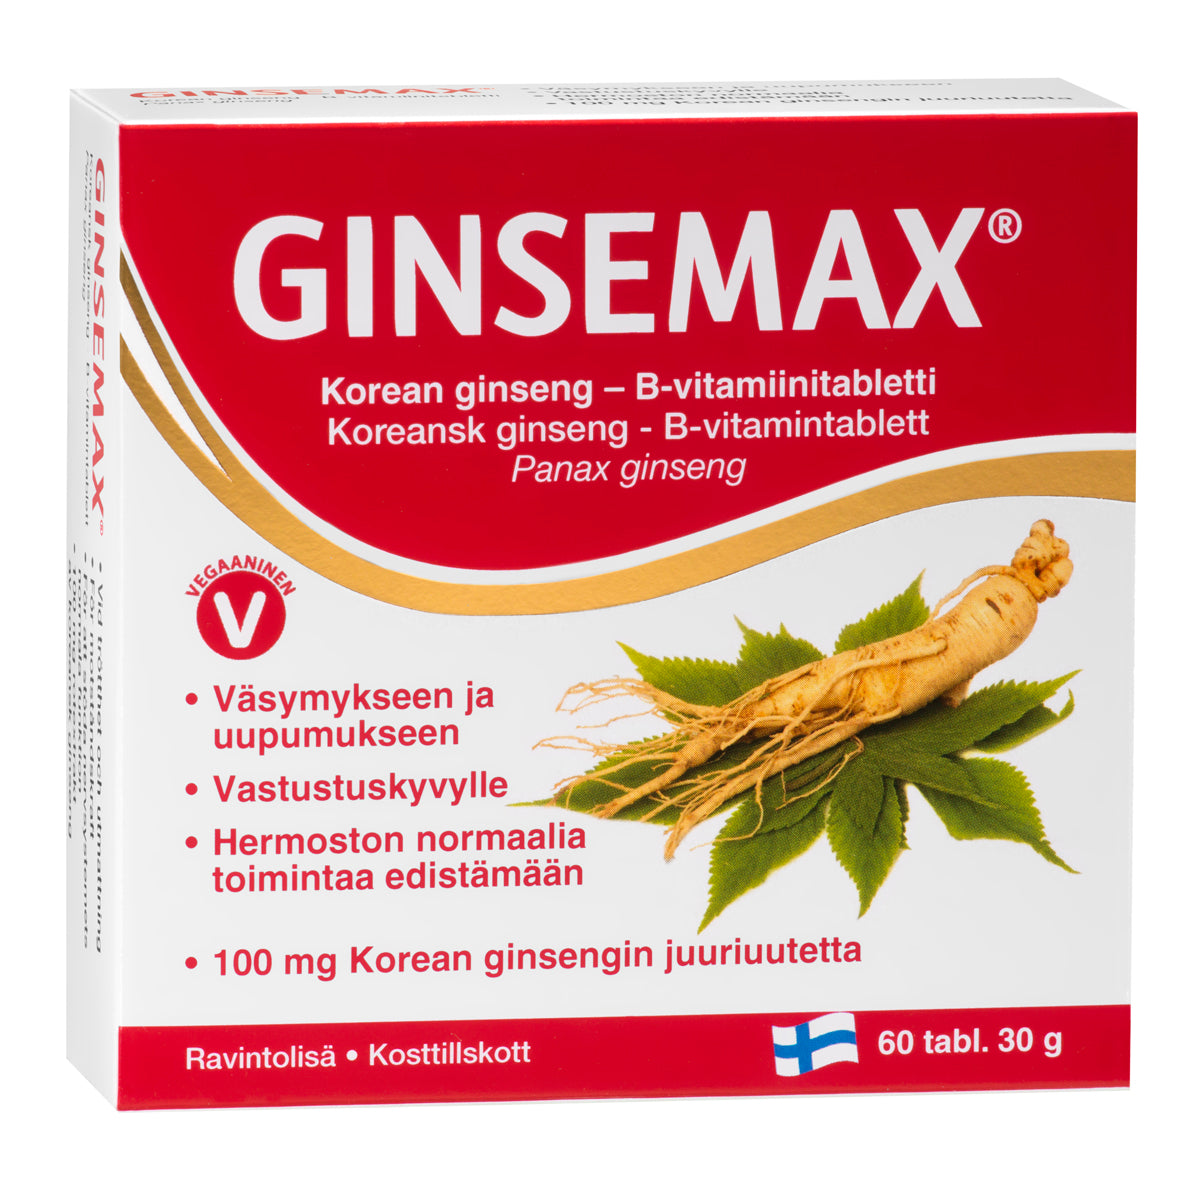 Ginsemax - Korean Ginseng B-vitamiinitabletti 60 tabl.